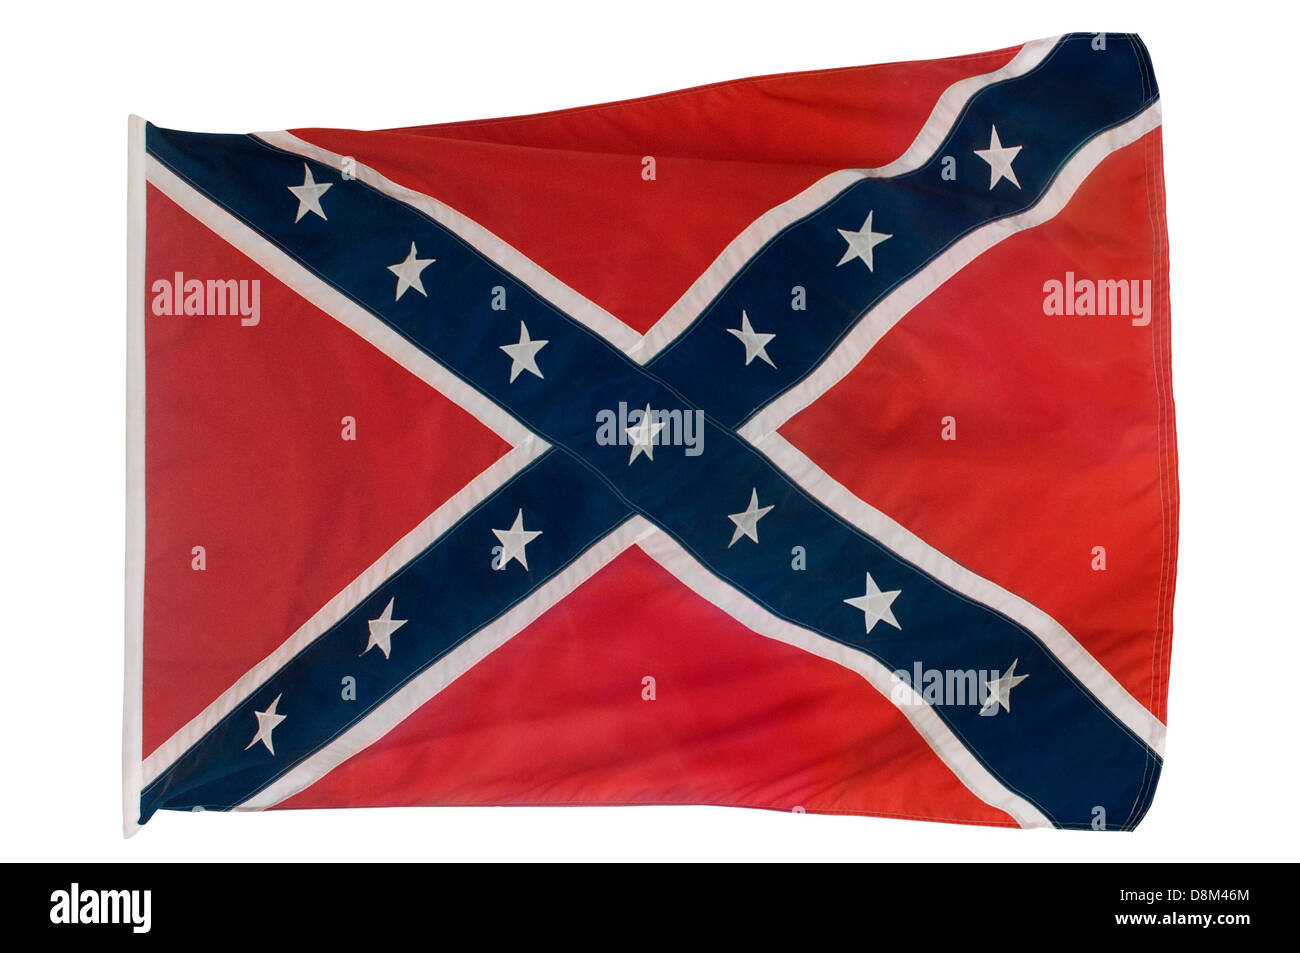 Confederati bandiera di battaglia, Fort Pillow parco statale, Tennessee. Fotografia digitale Foto Stock